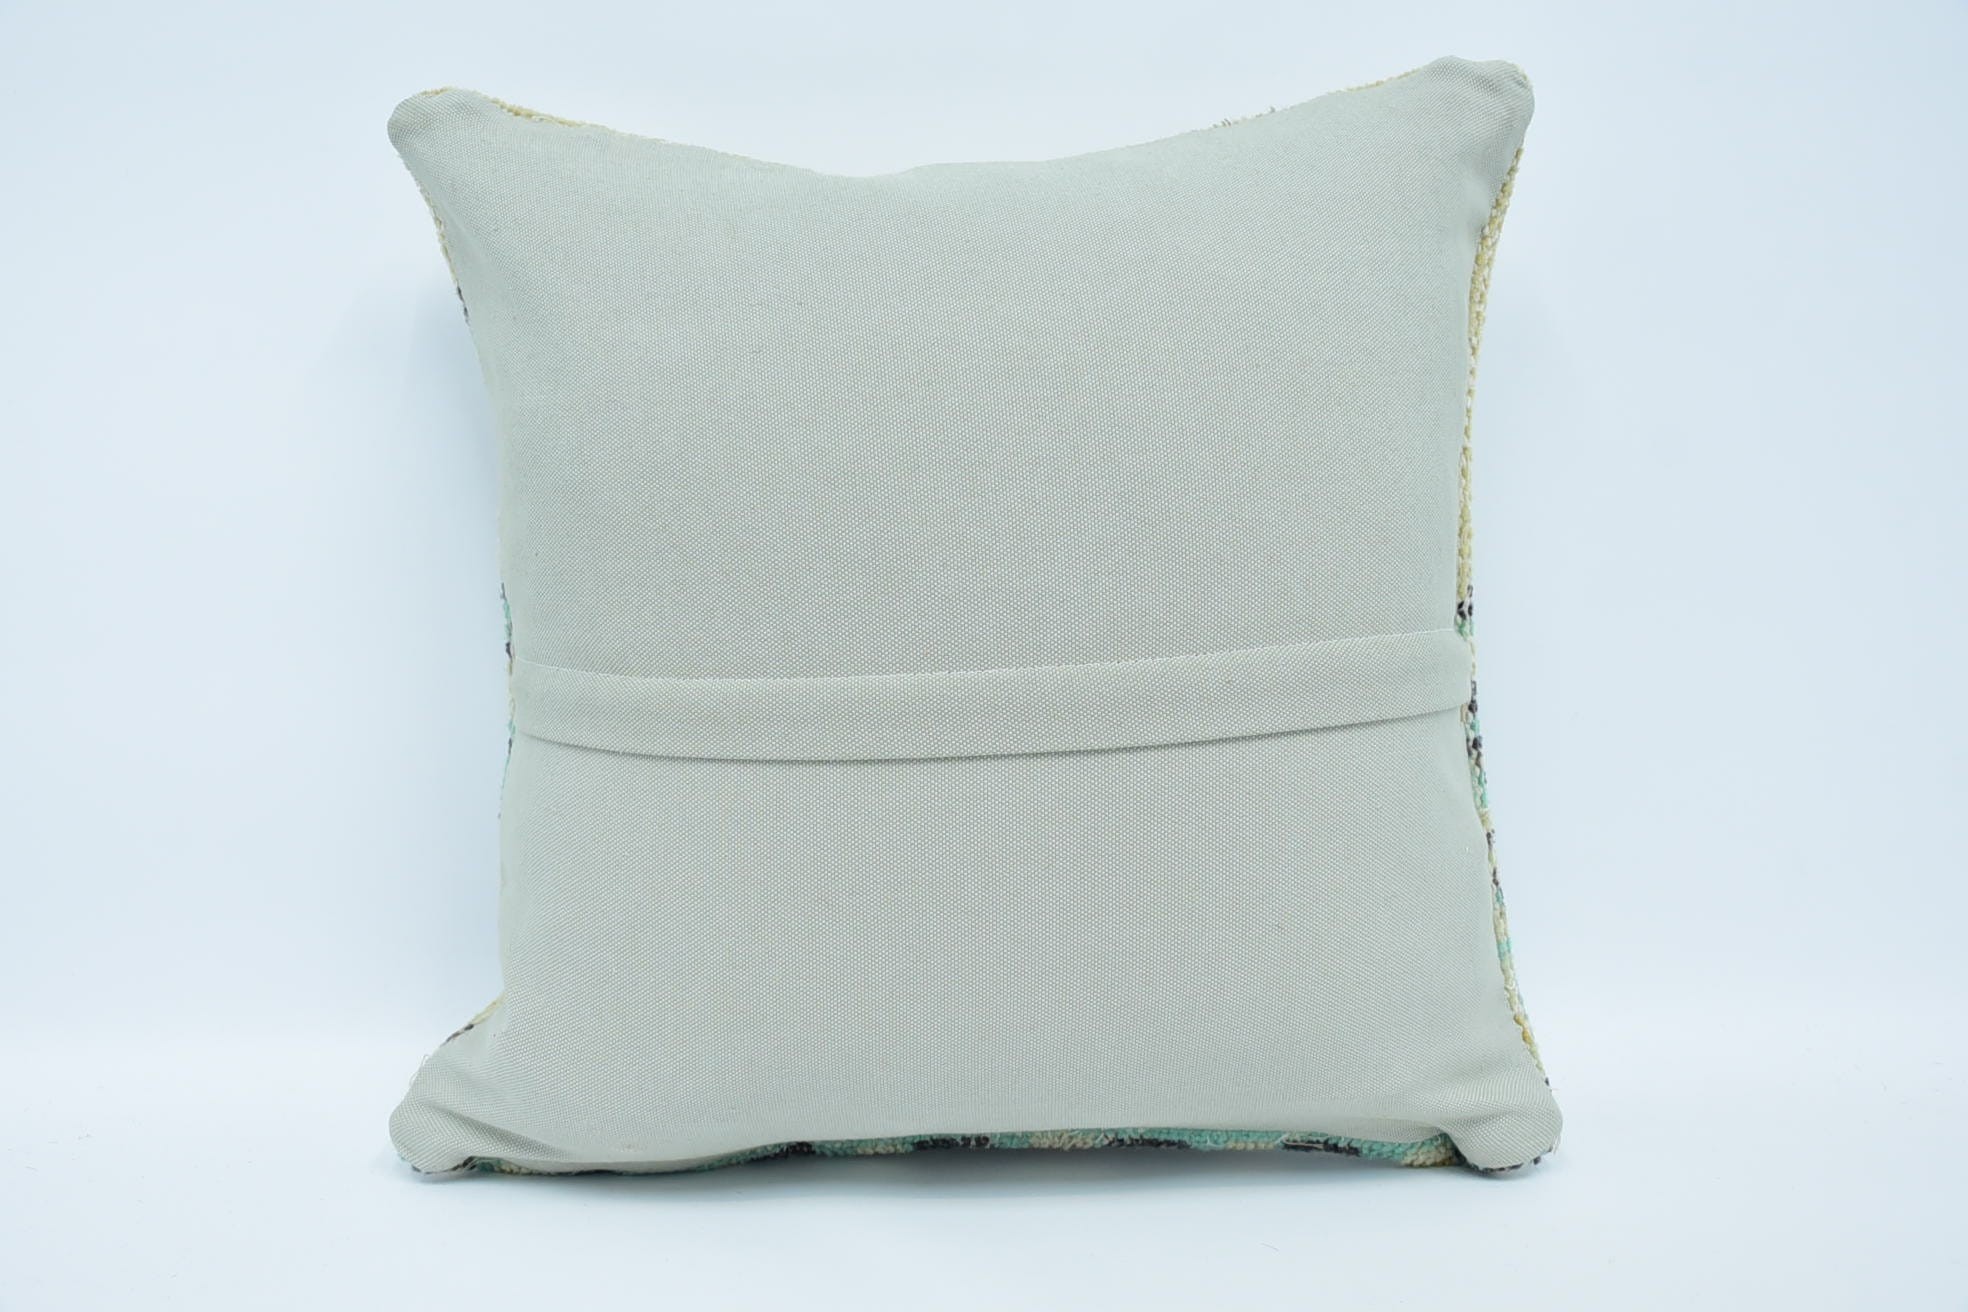 Boho Pillow, Kilim Pillow Cover, Vintage Kilim Throw Pillow, Farmhouse Pillow Case, 18"x18" Beige Cushion Case